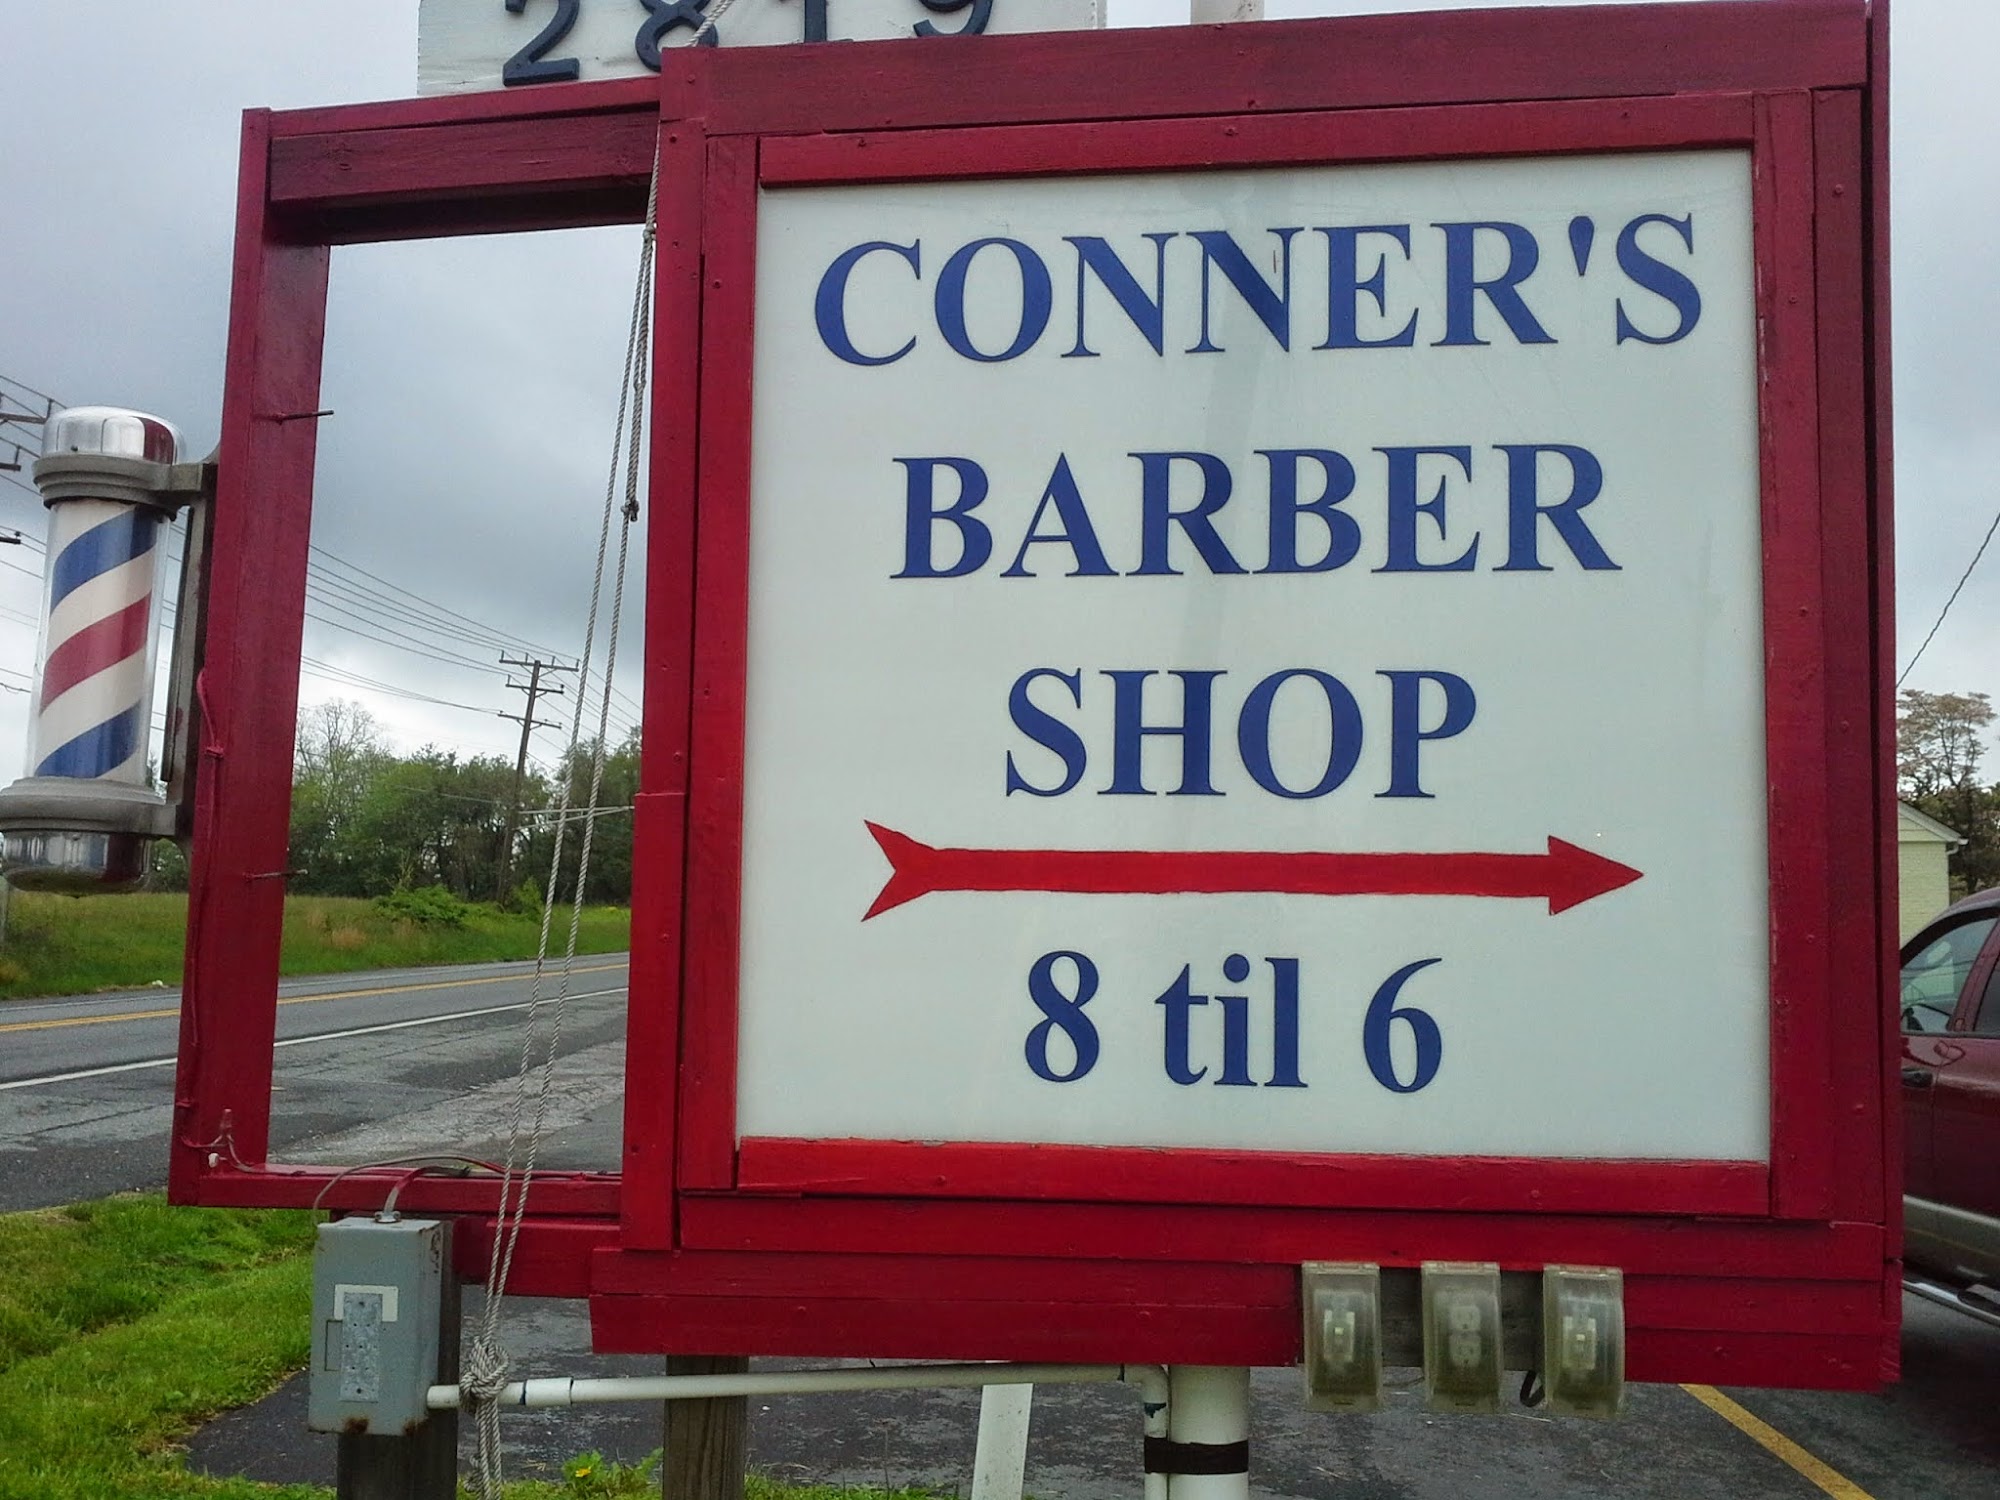 Conner's Barber Shop 2819 Churchville Rd, Churchville Maryland 21028